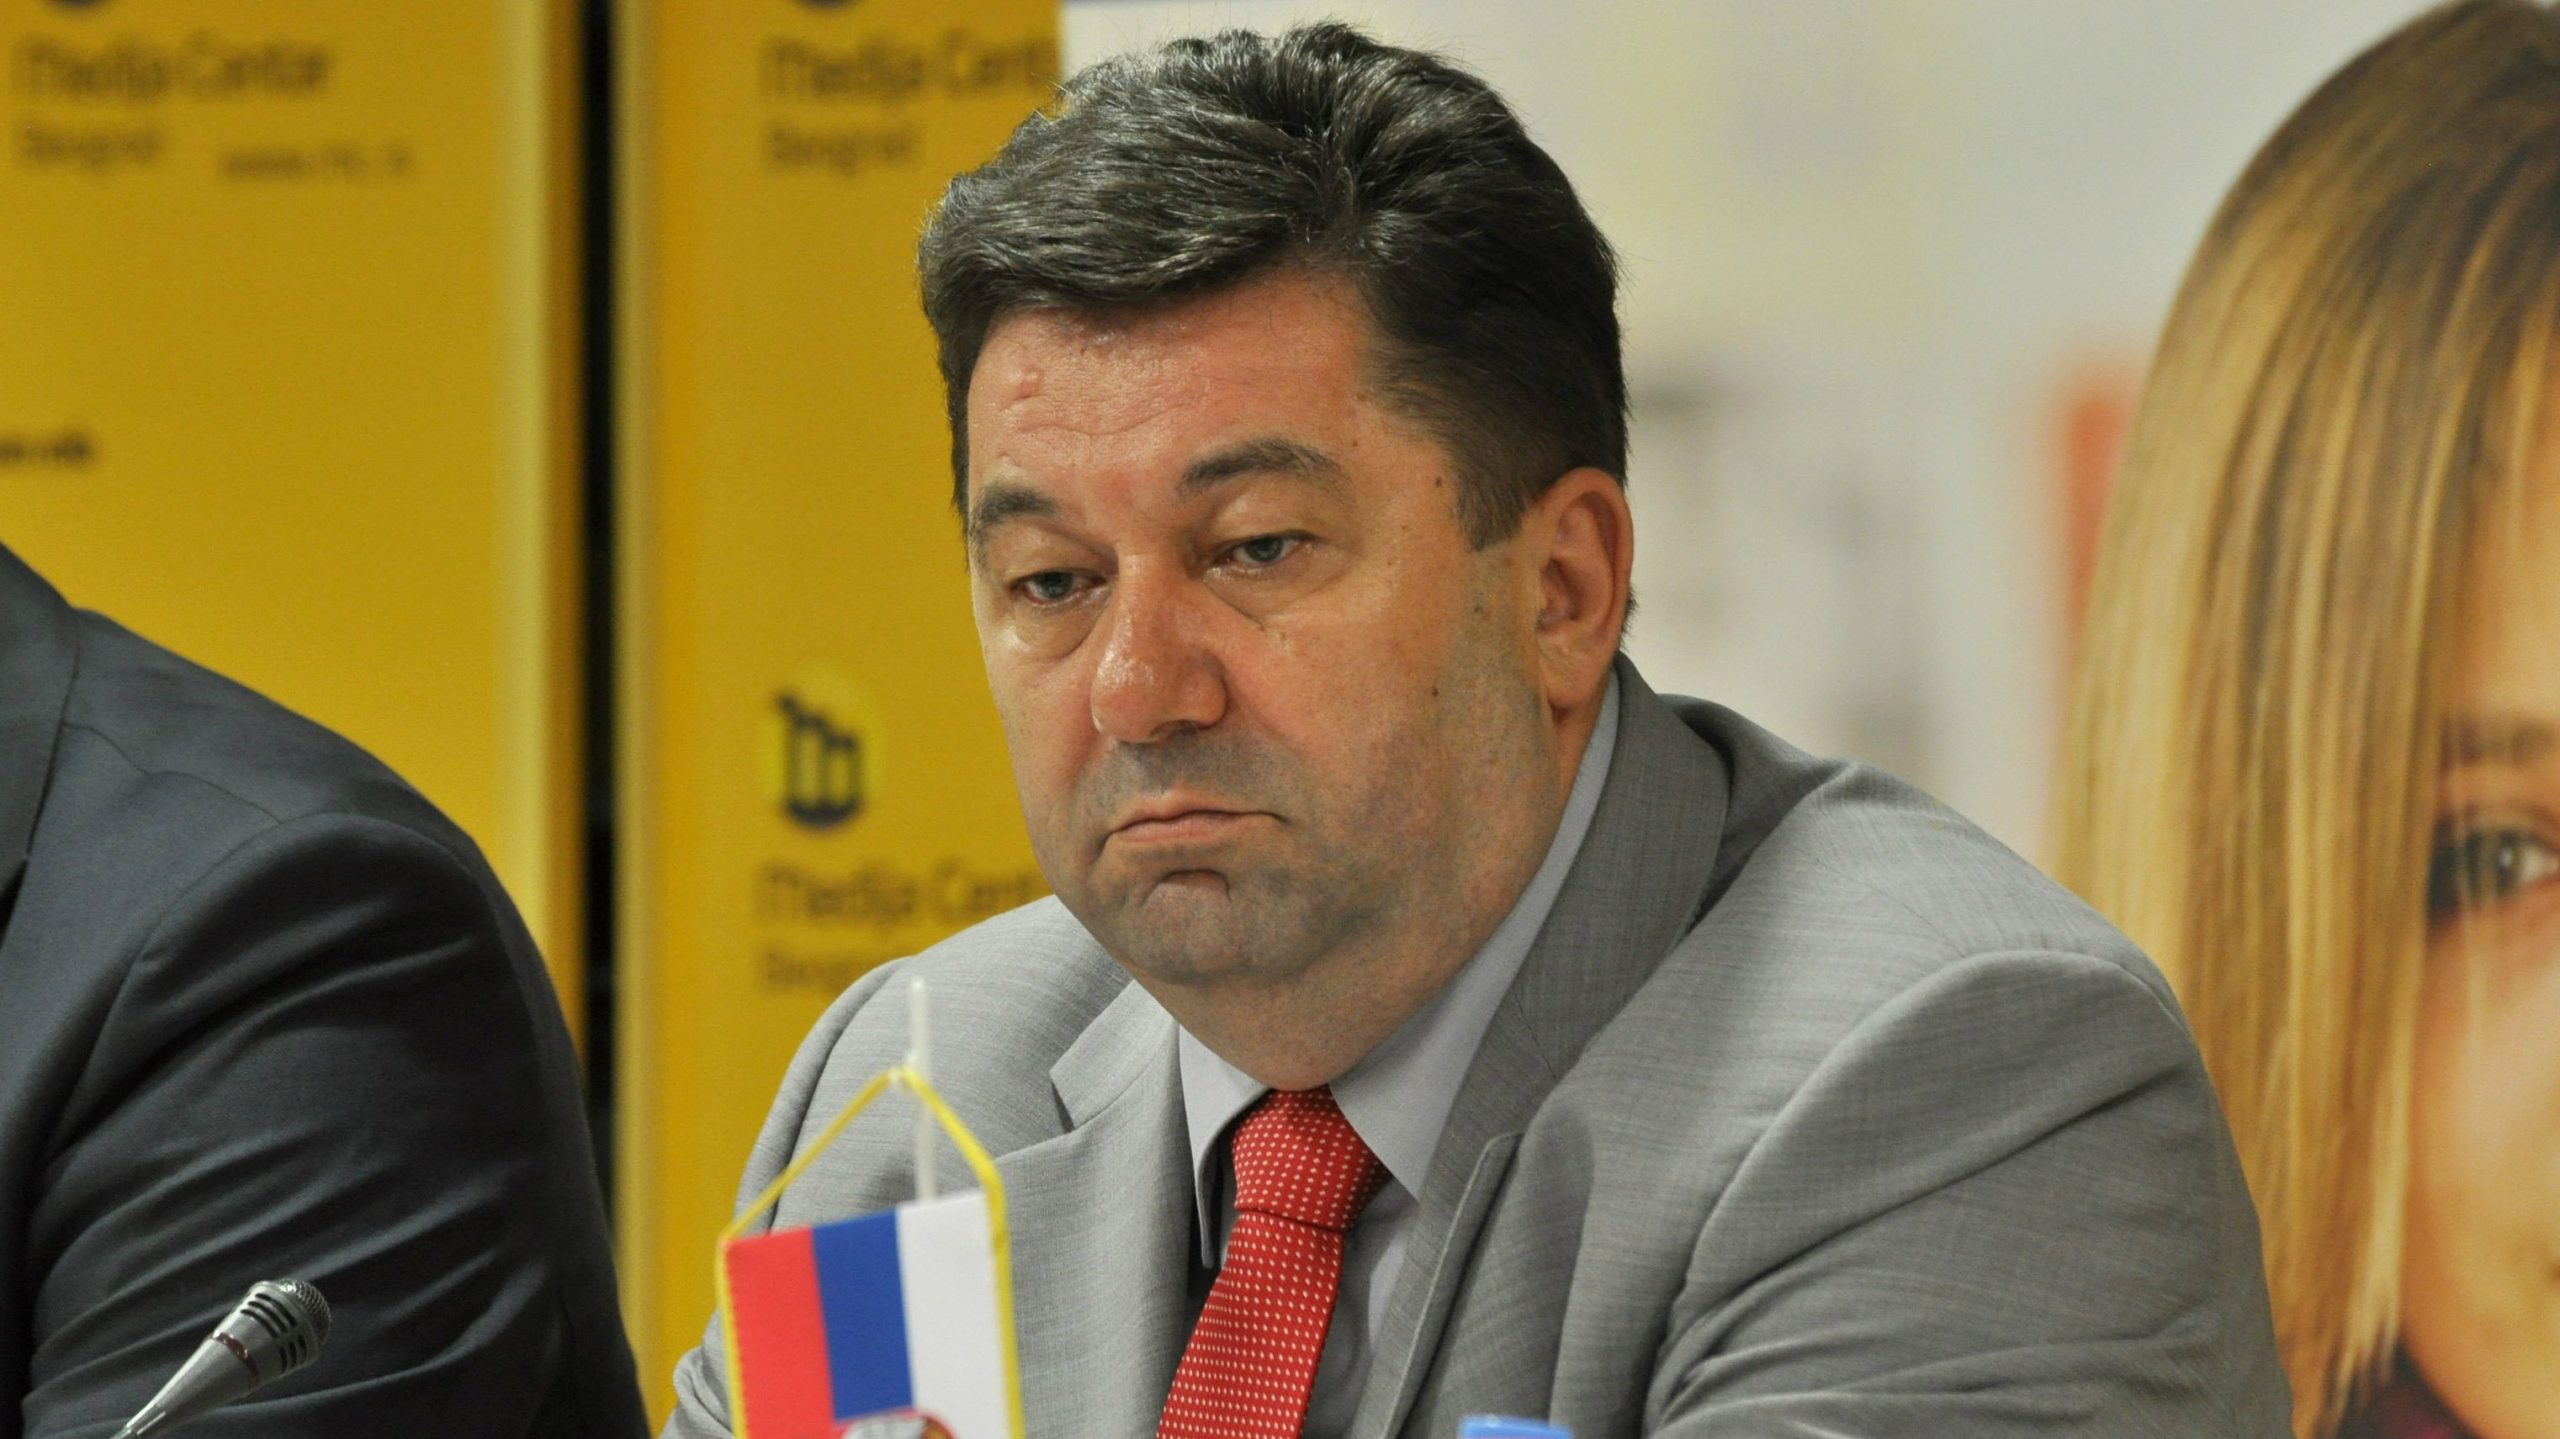 Radivoje Mitrović ponovo izabran za dekana 1